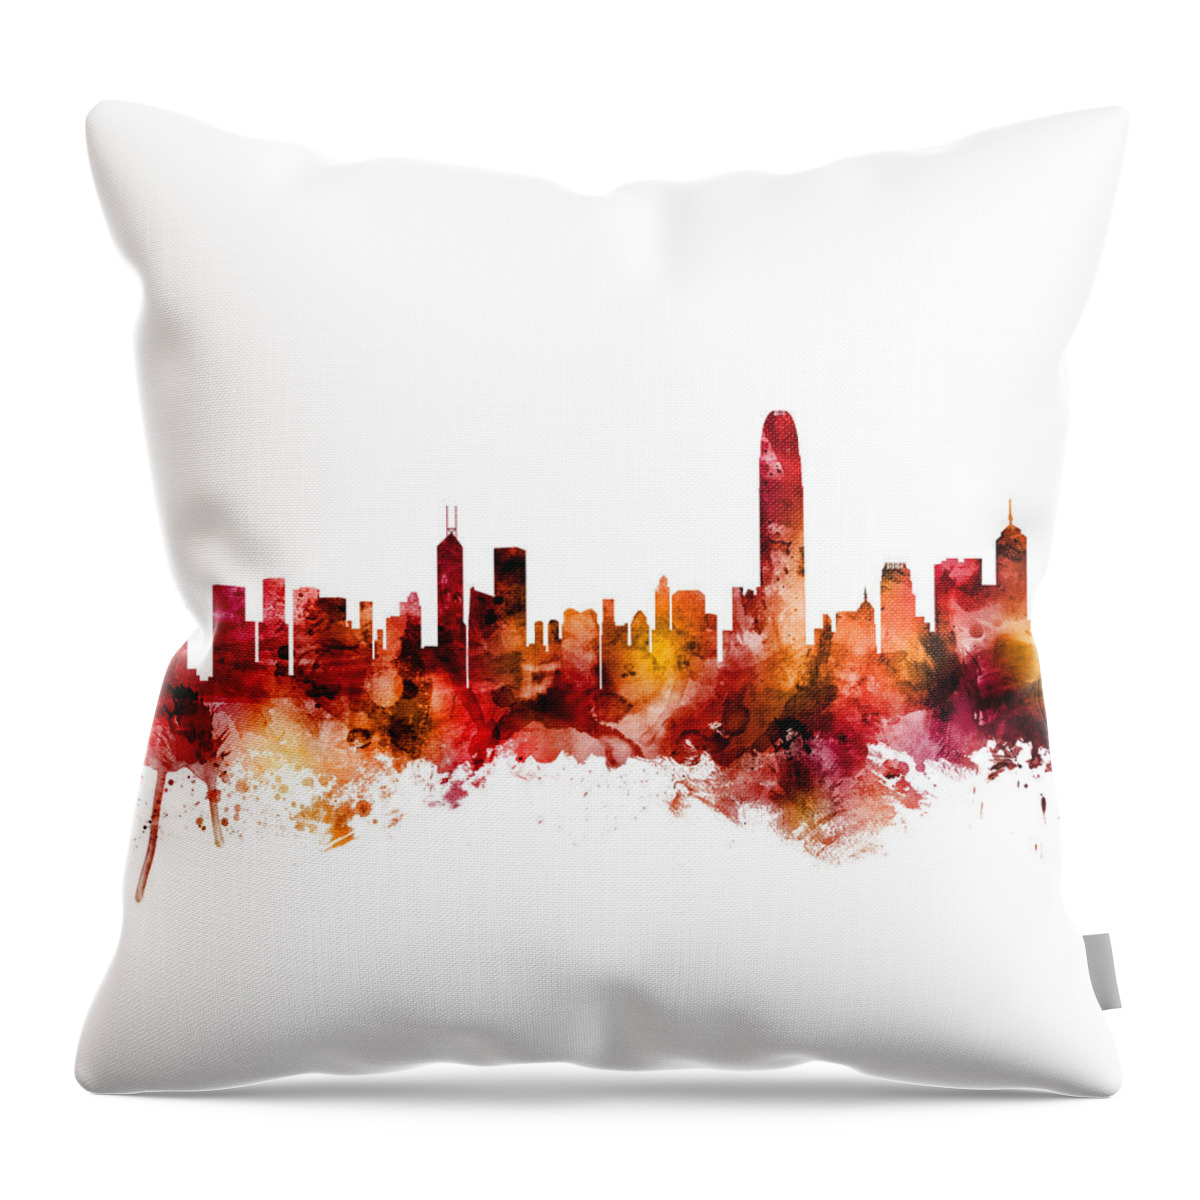 Hong Kong Throw Pillow featuring the digital art Hong Kong Skyline #8 by Michael Tompsett